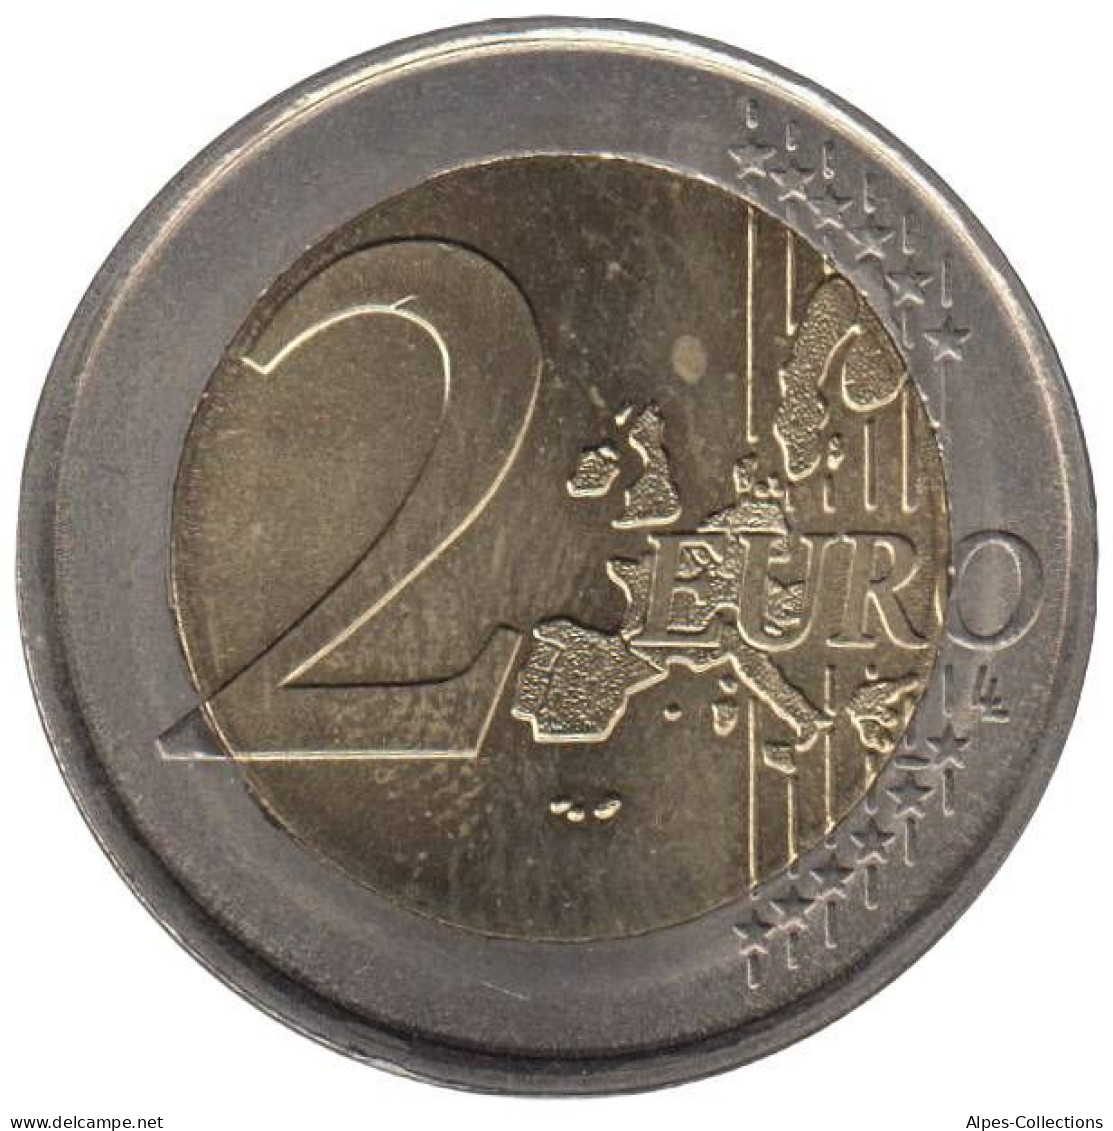 PO20004.1 - PORTUGAL - 2 Euros - 2004 - Portogallo